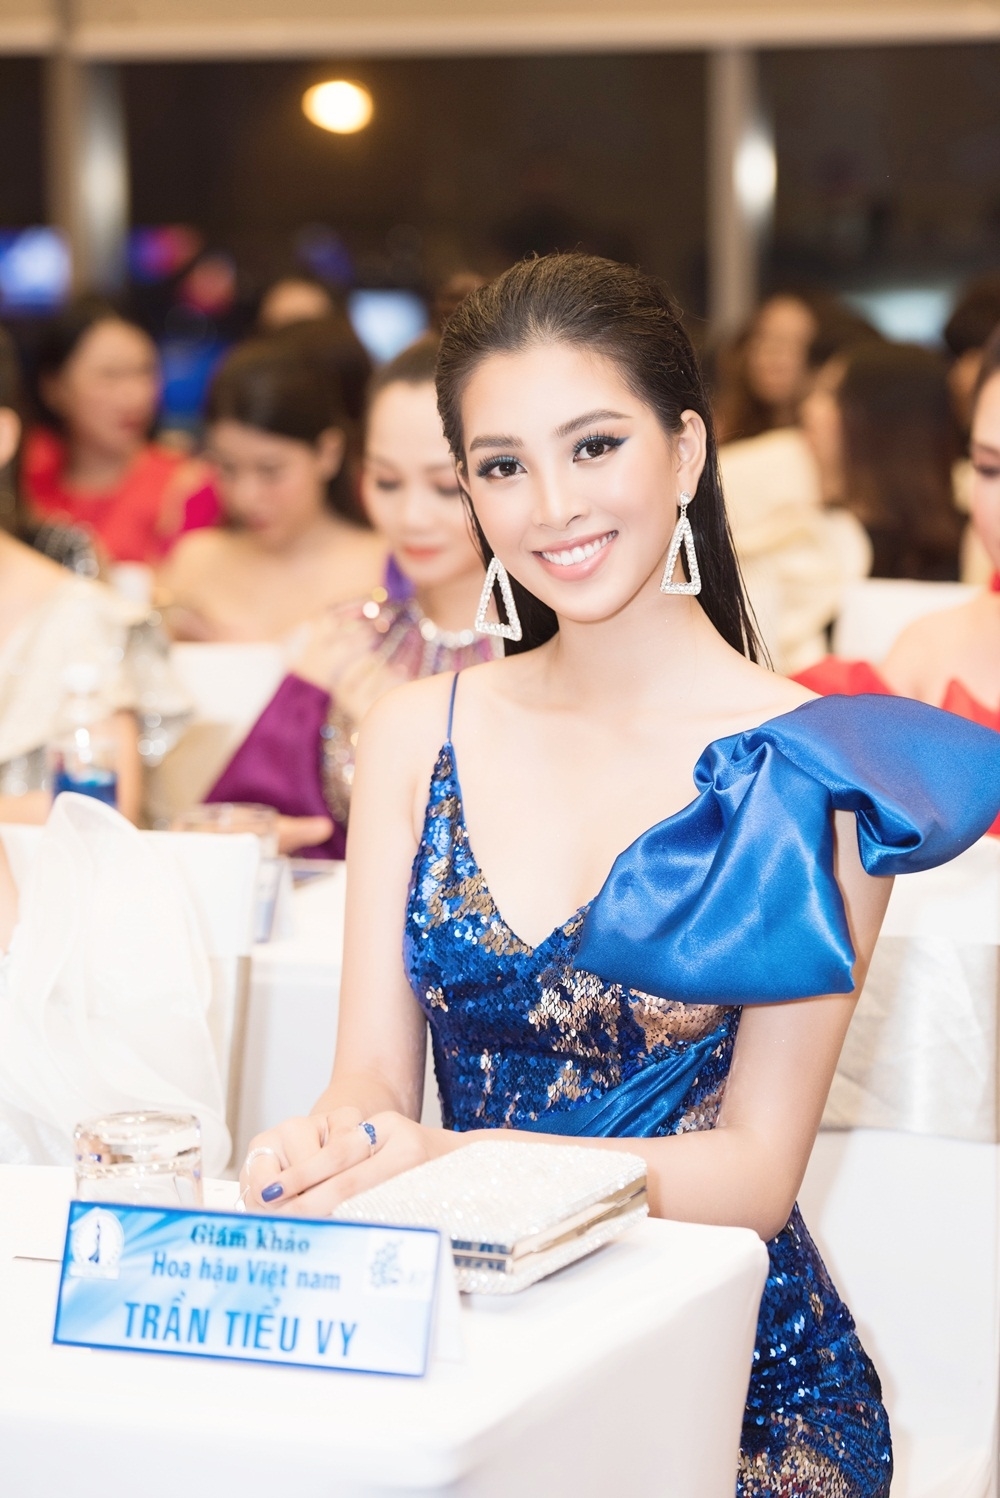 Cận cảnh vương miện được làm từ 2000 viên pha lê cuộc thi do Hoa hậu Tiểu Vy làm giám khảo